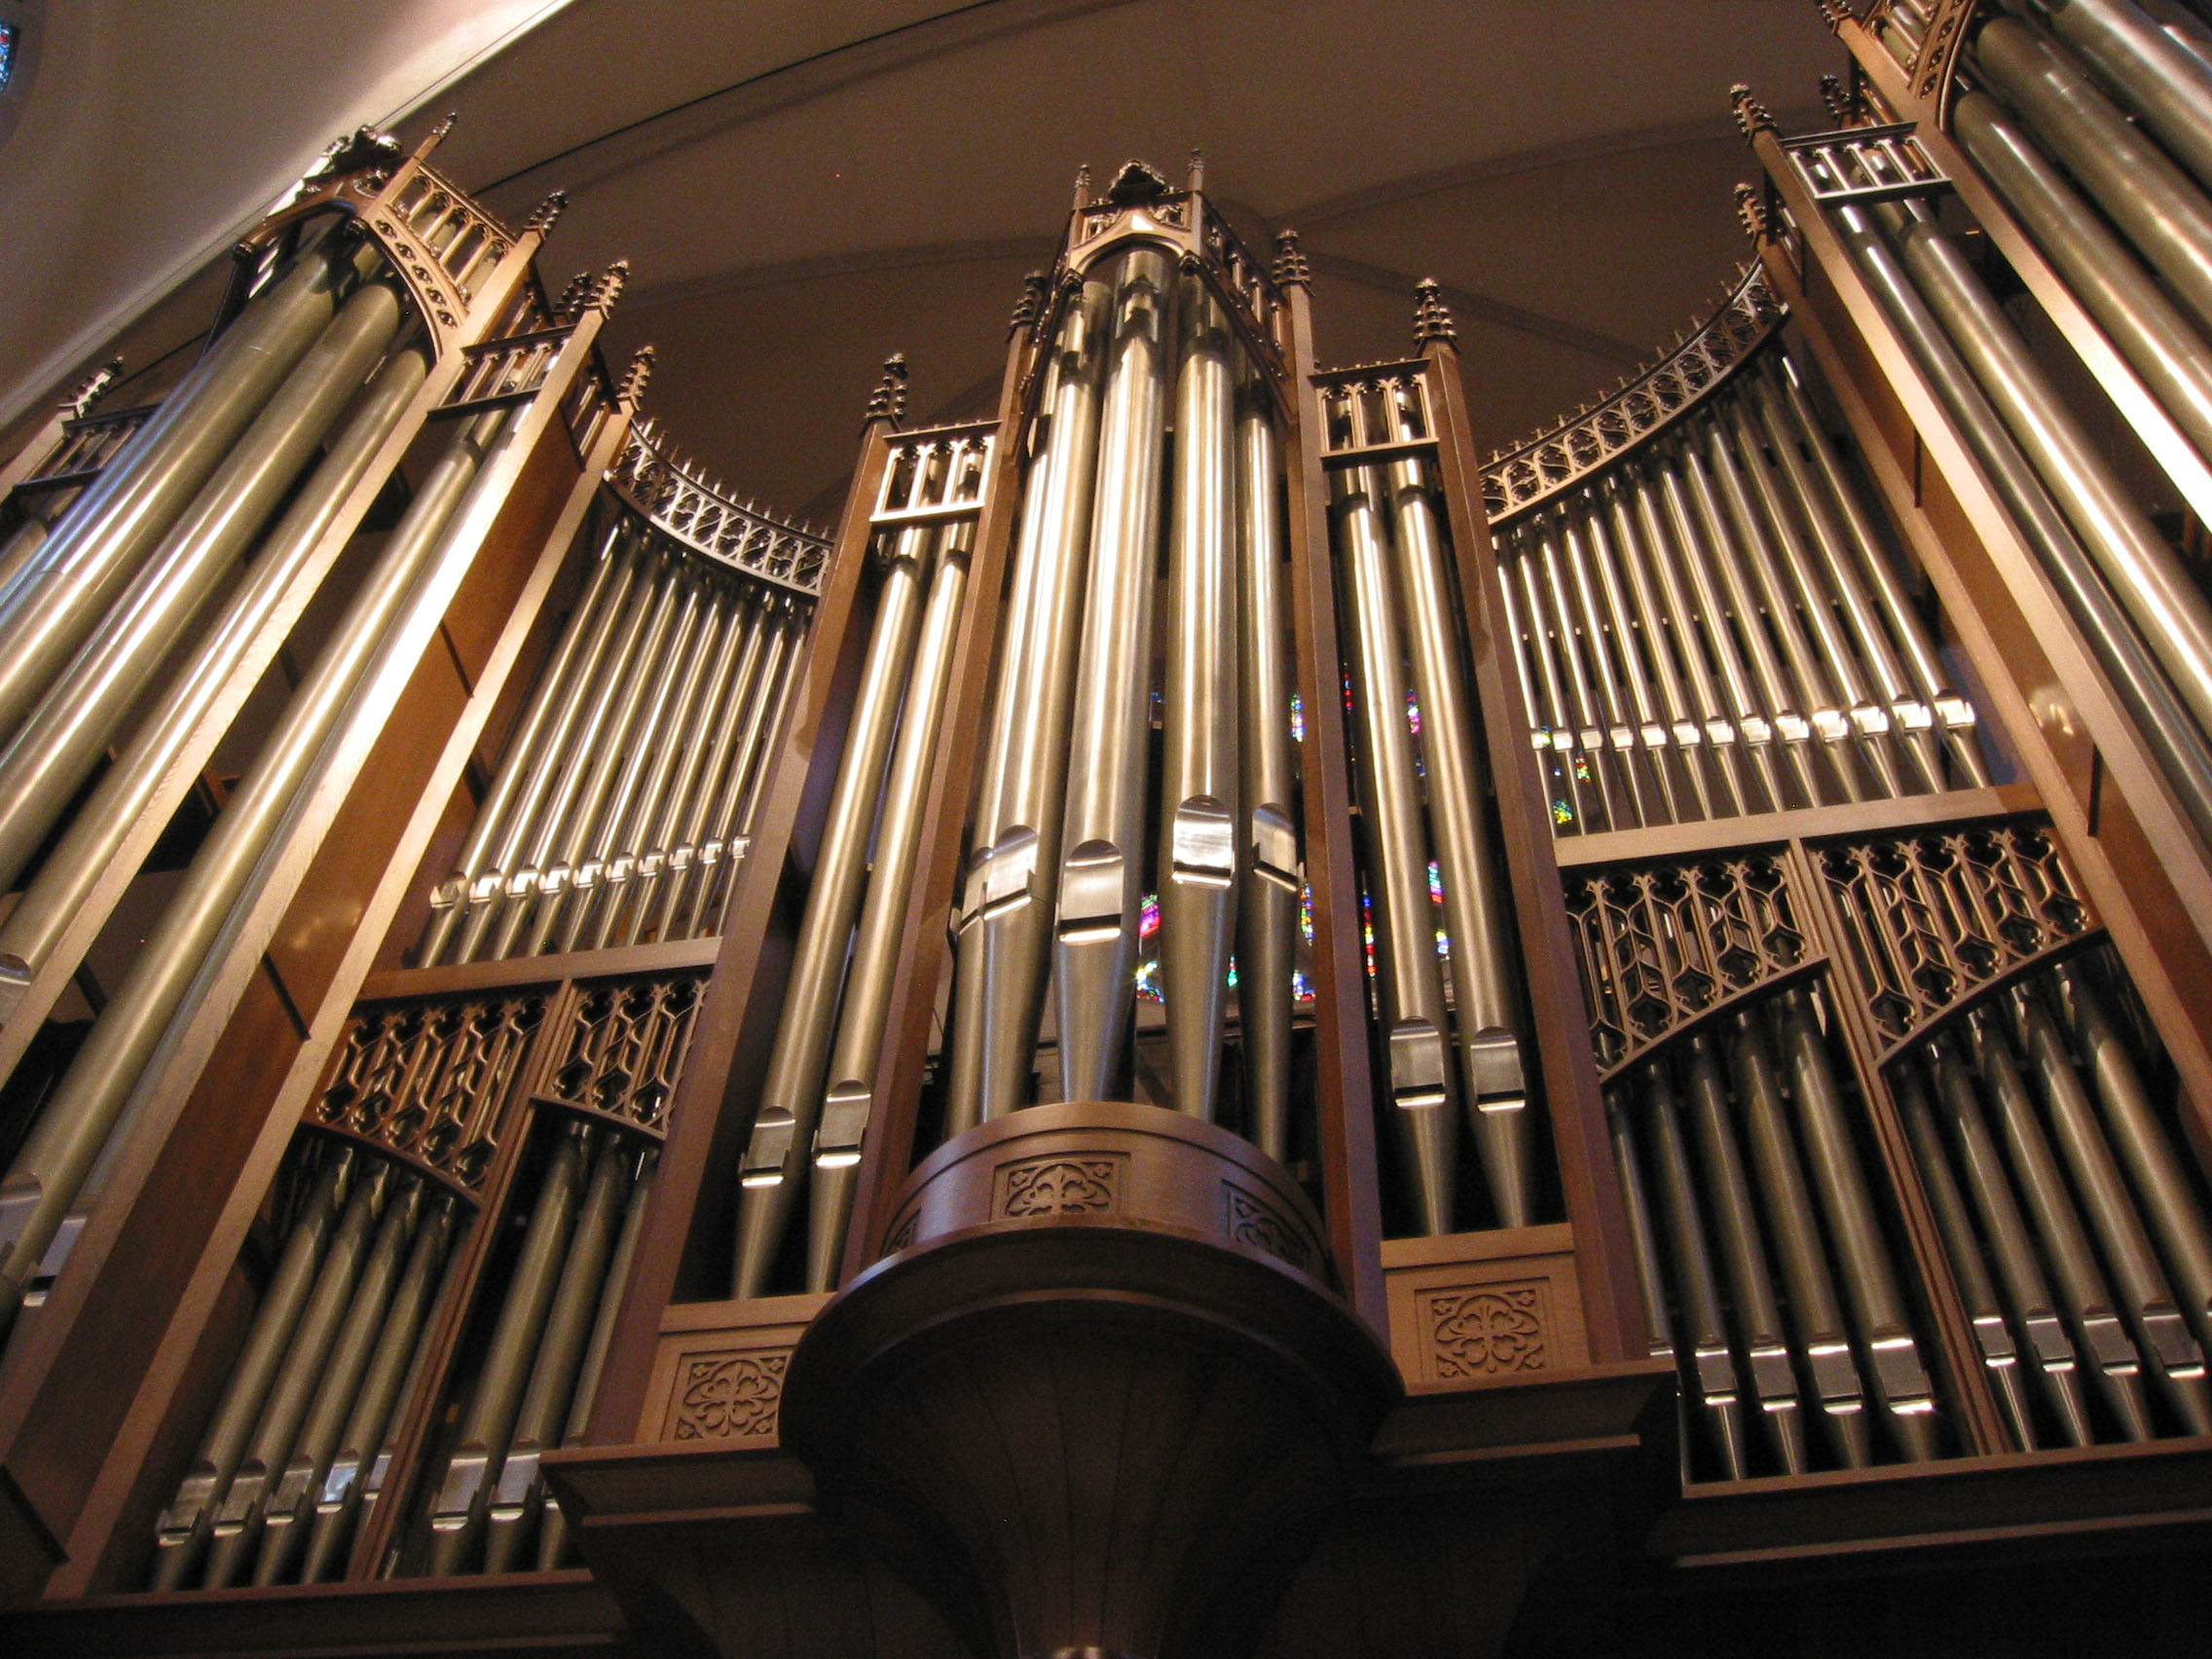 St Martins Schoenstein Organ